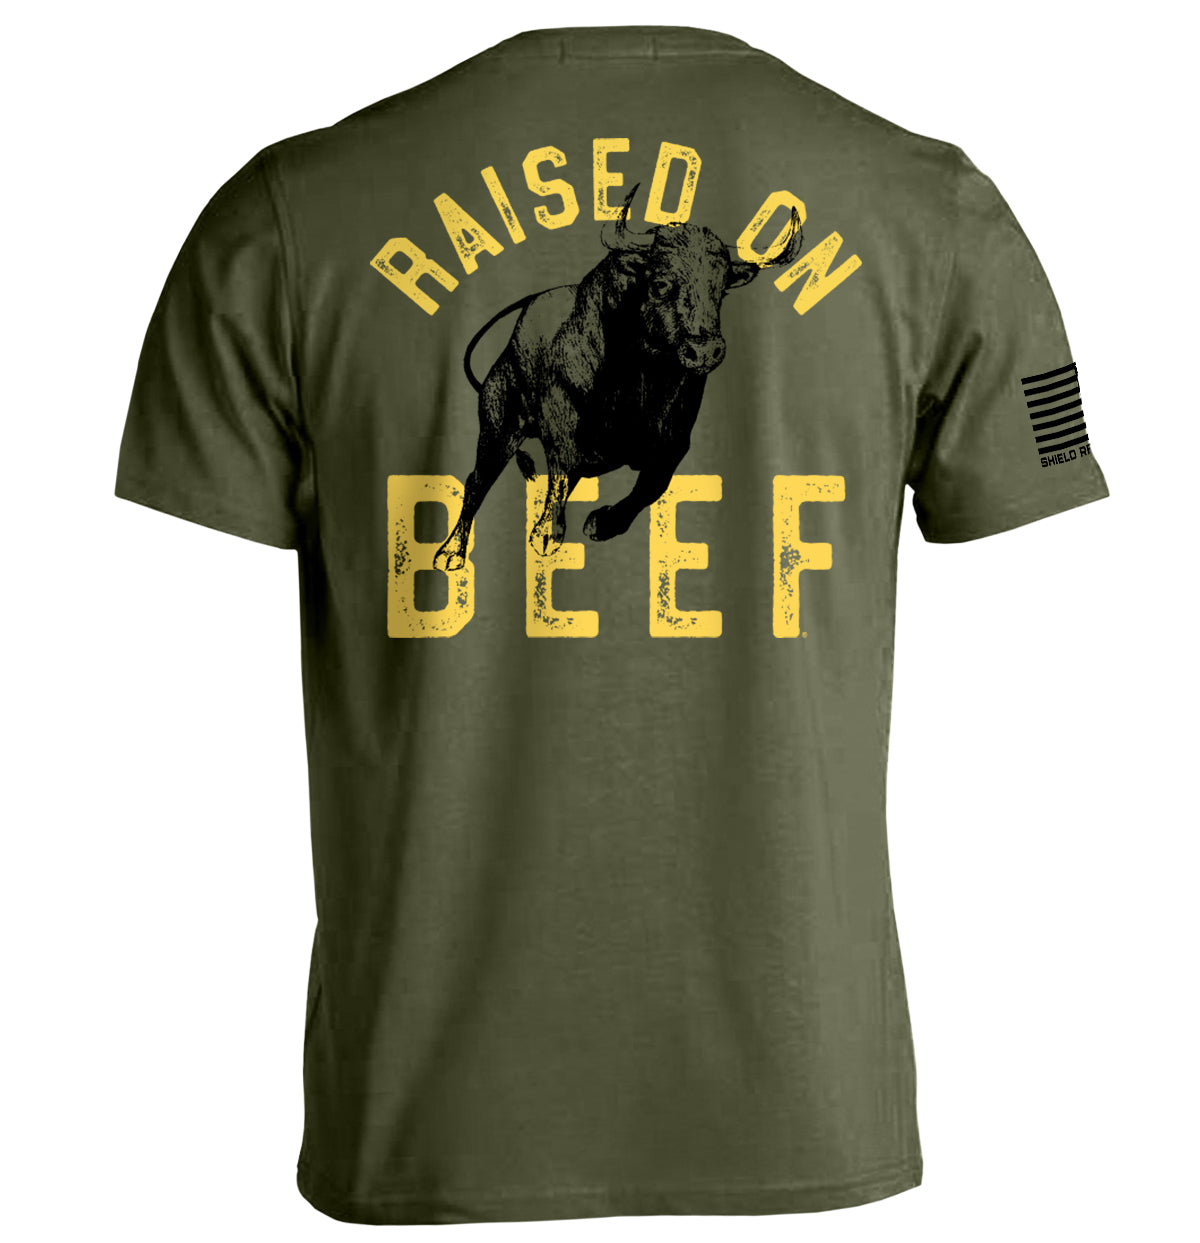 Raised On Beef